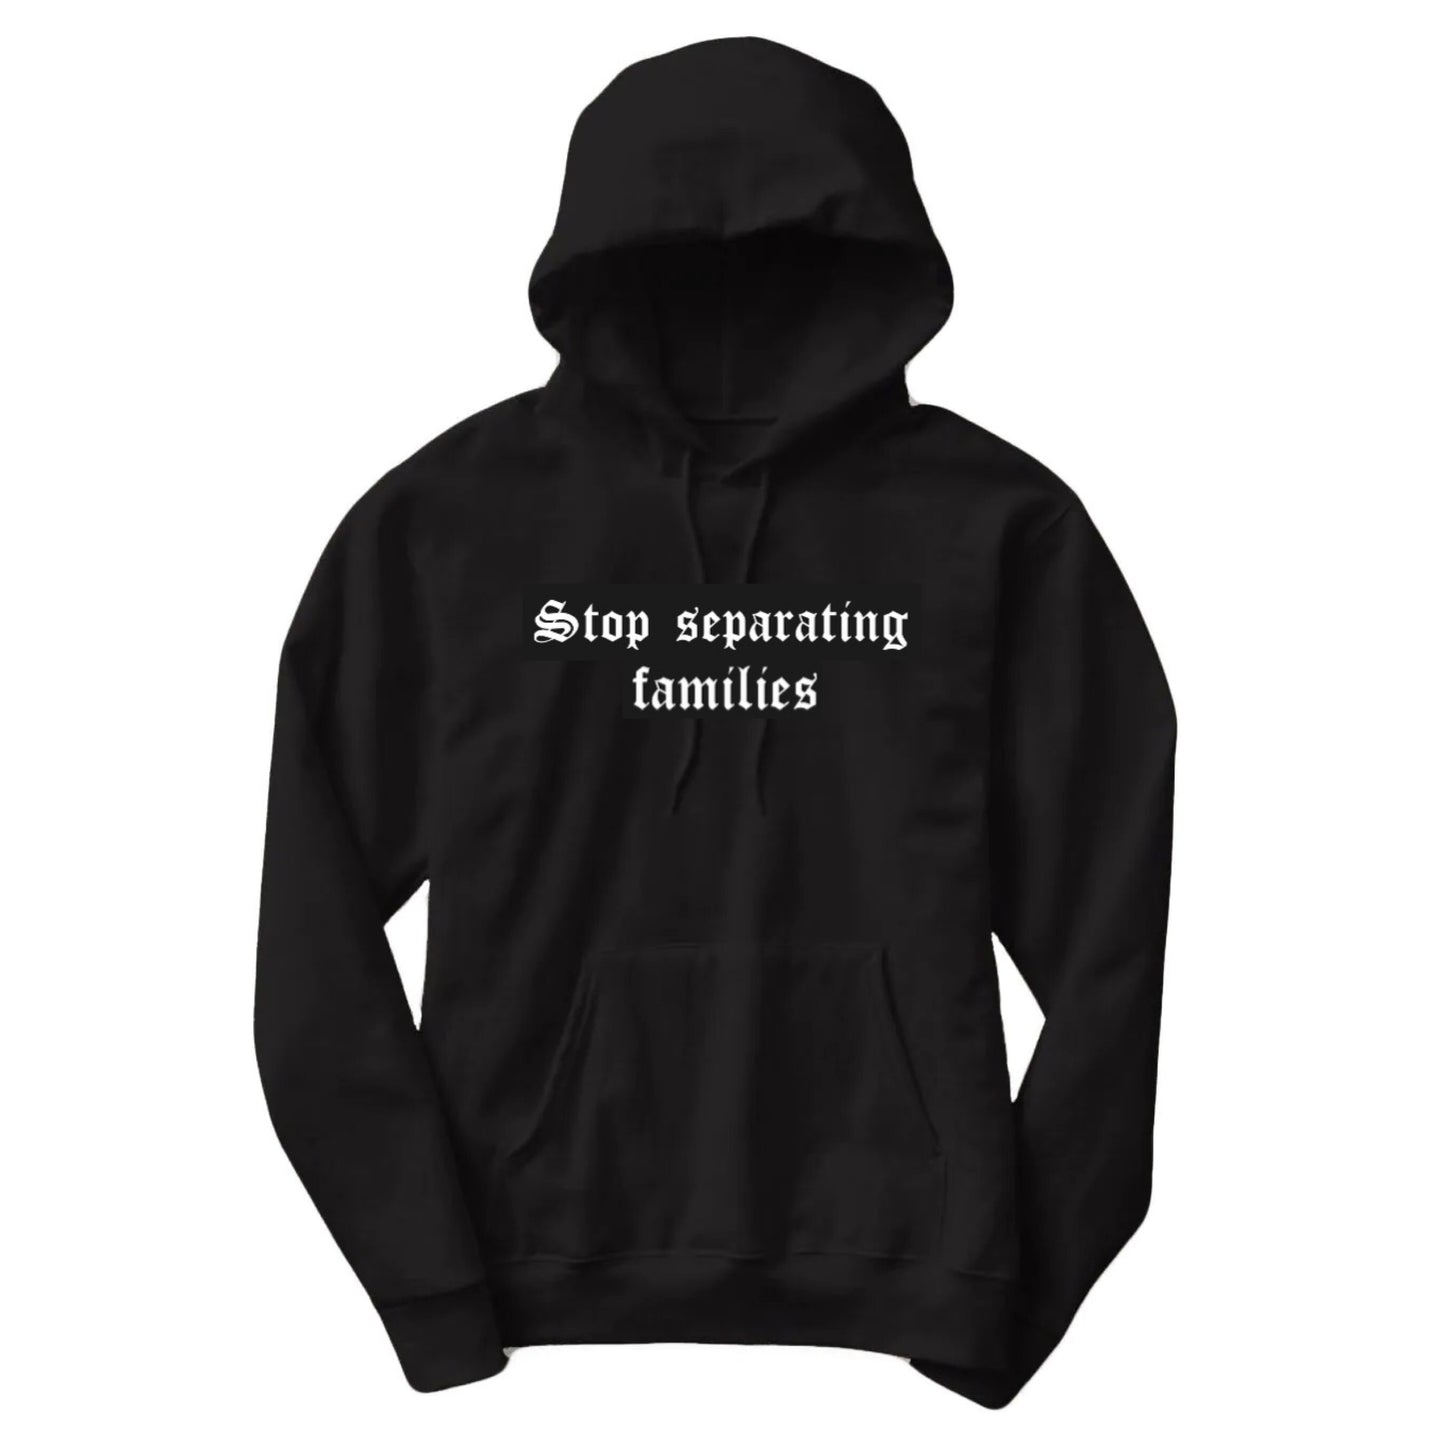 Stop separating families hoodie